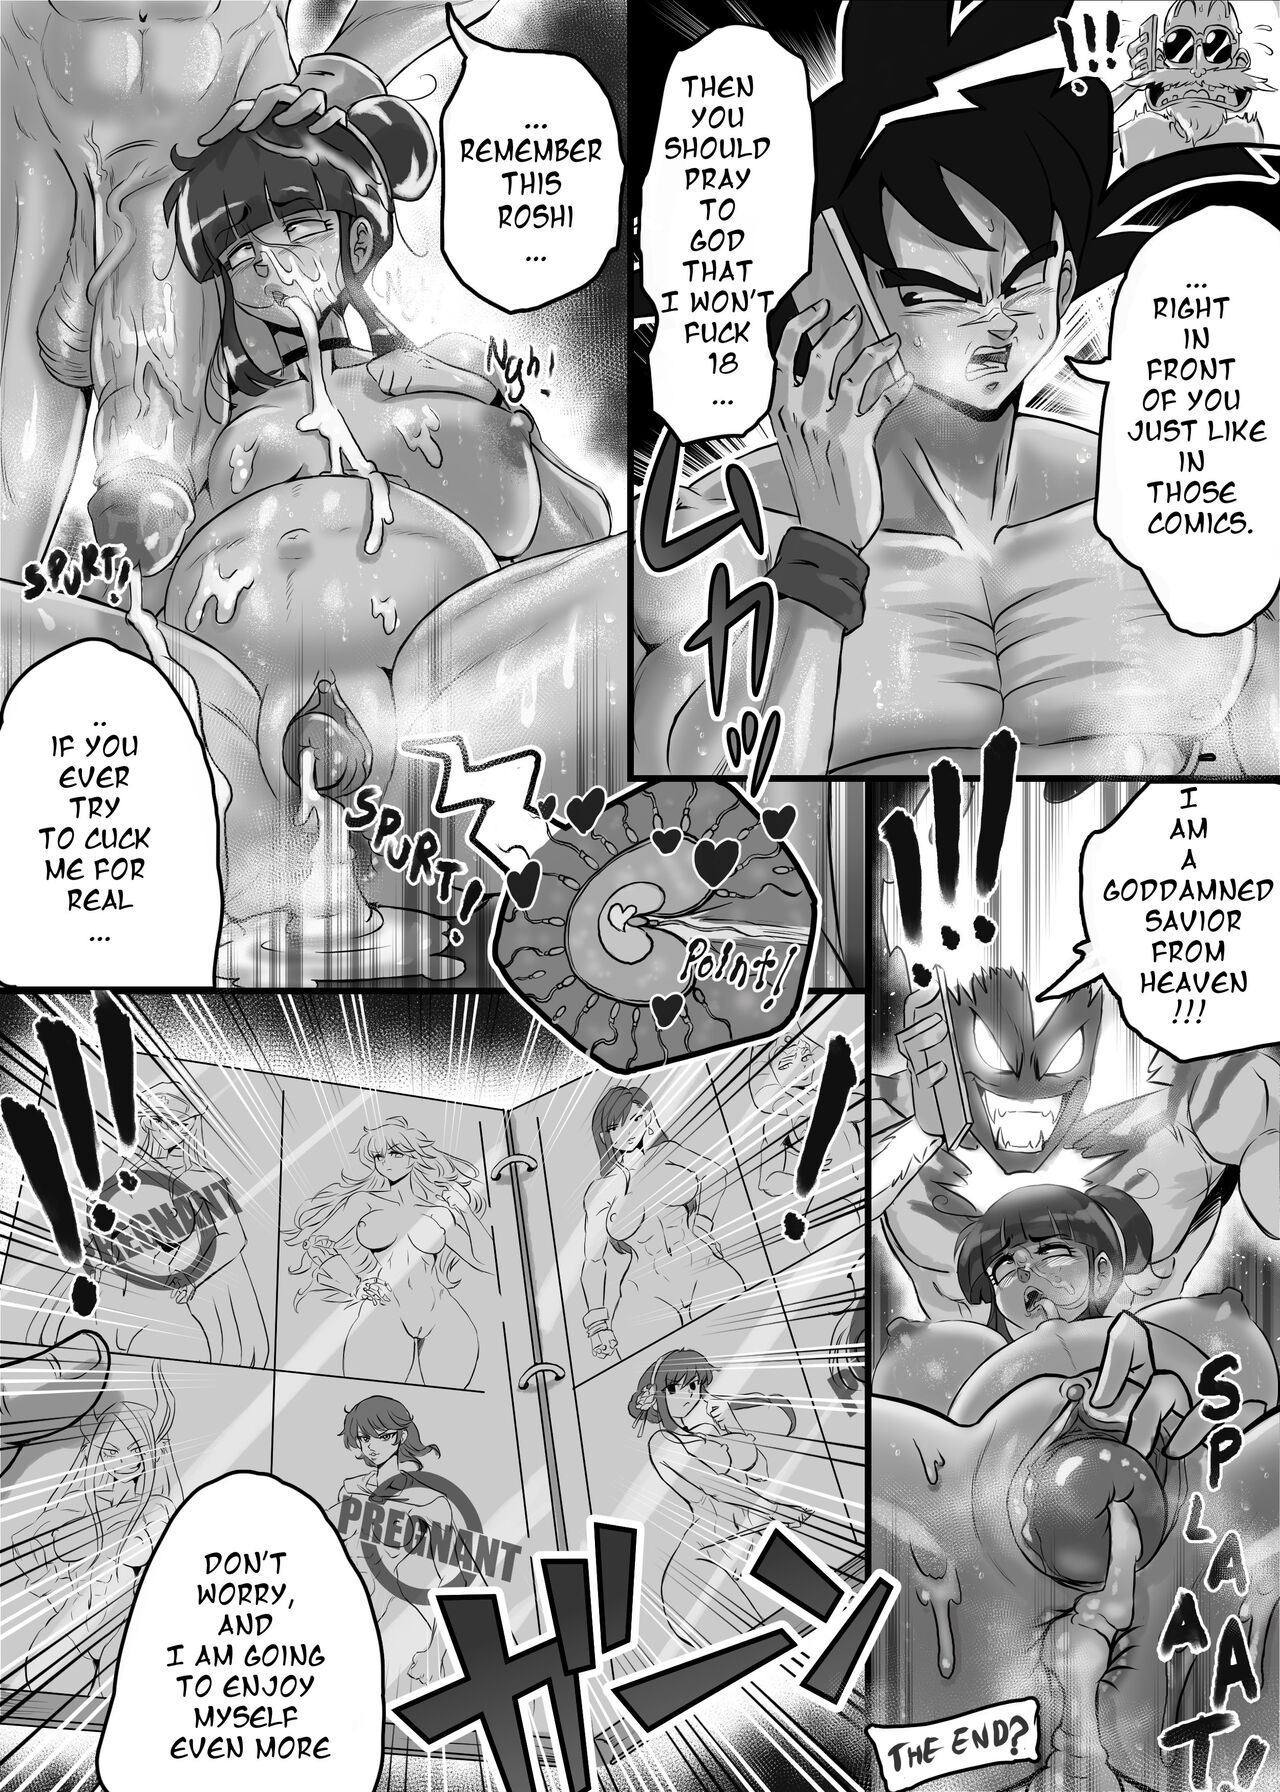 Ogi manga comics collection Porn Comic english 07